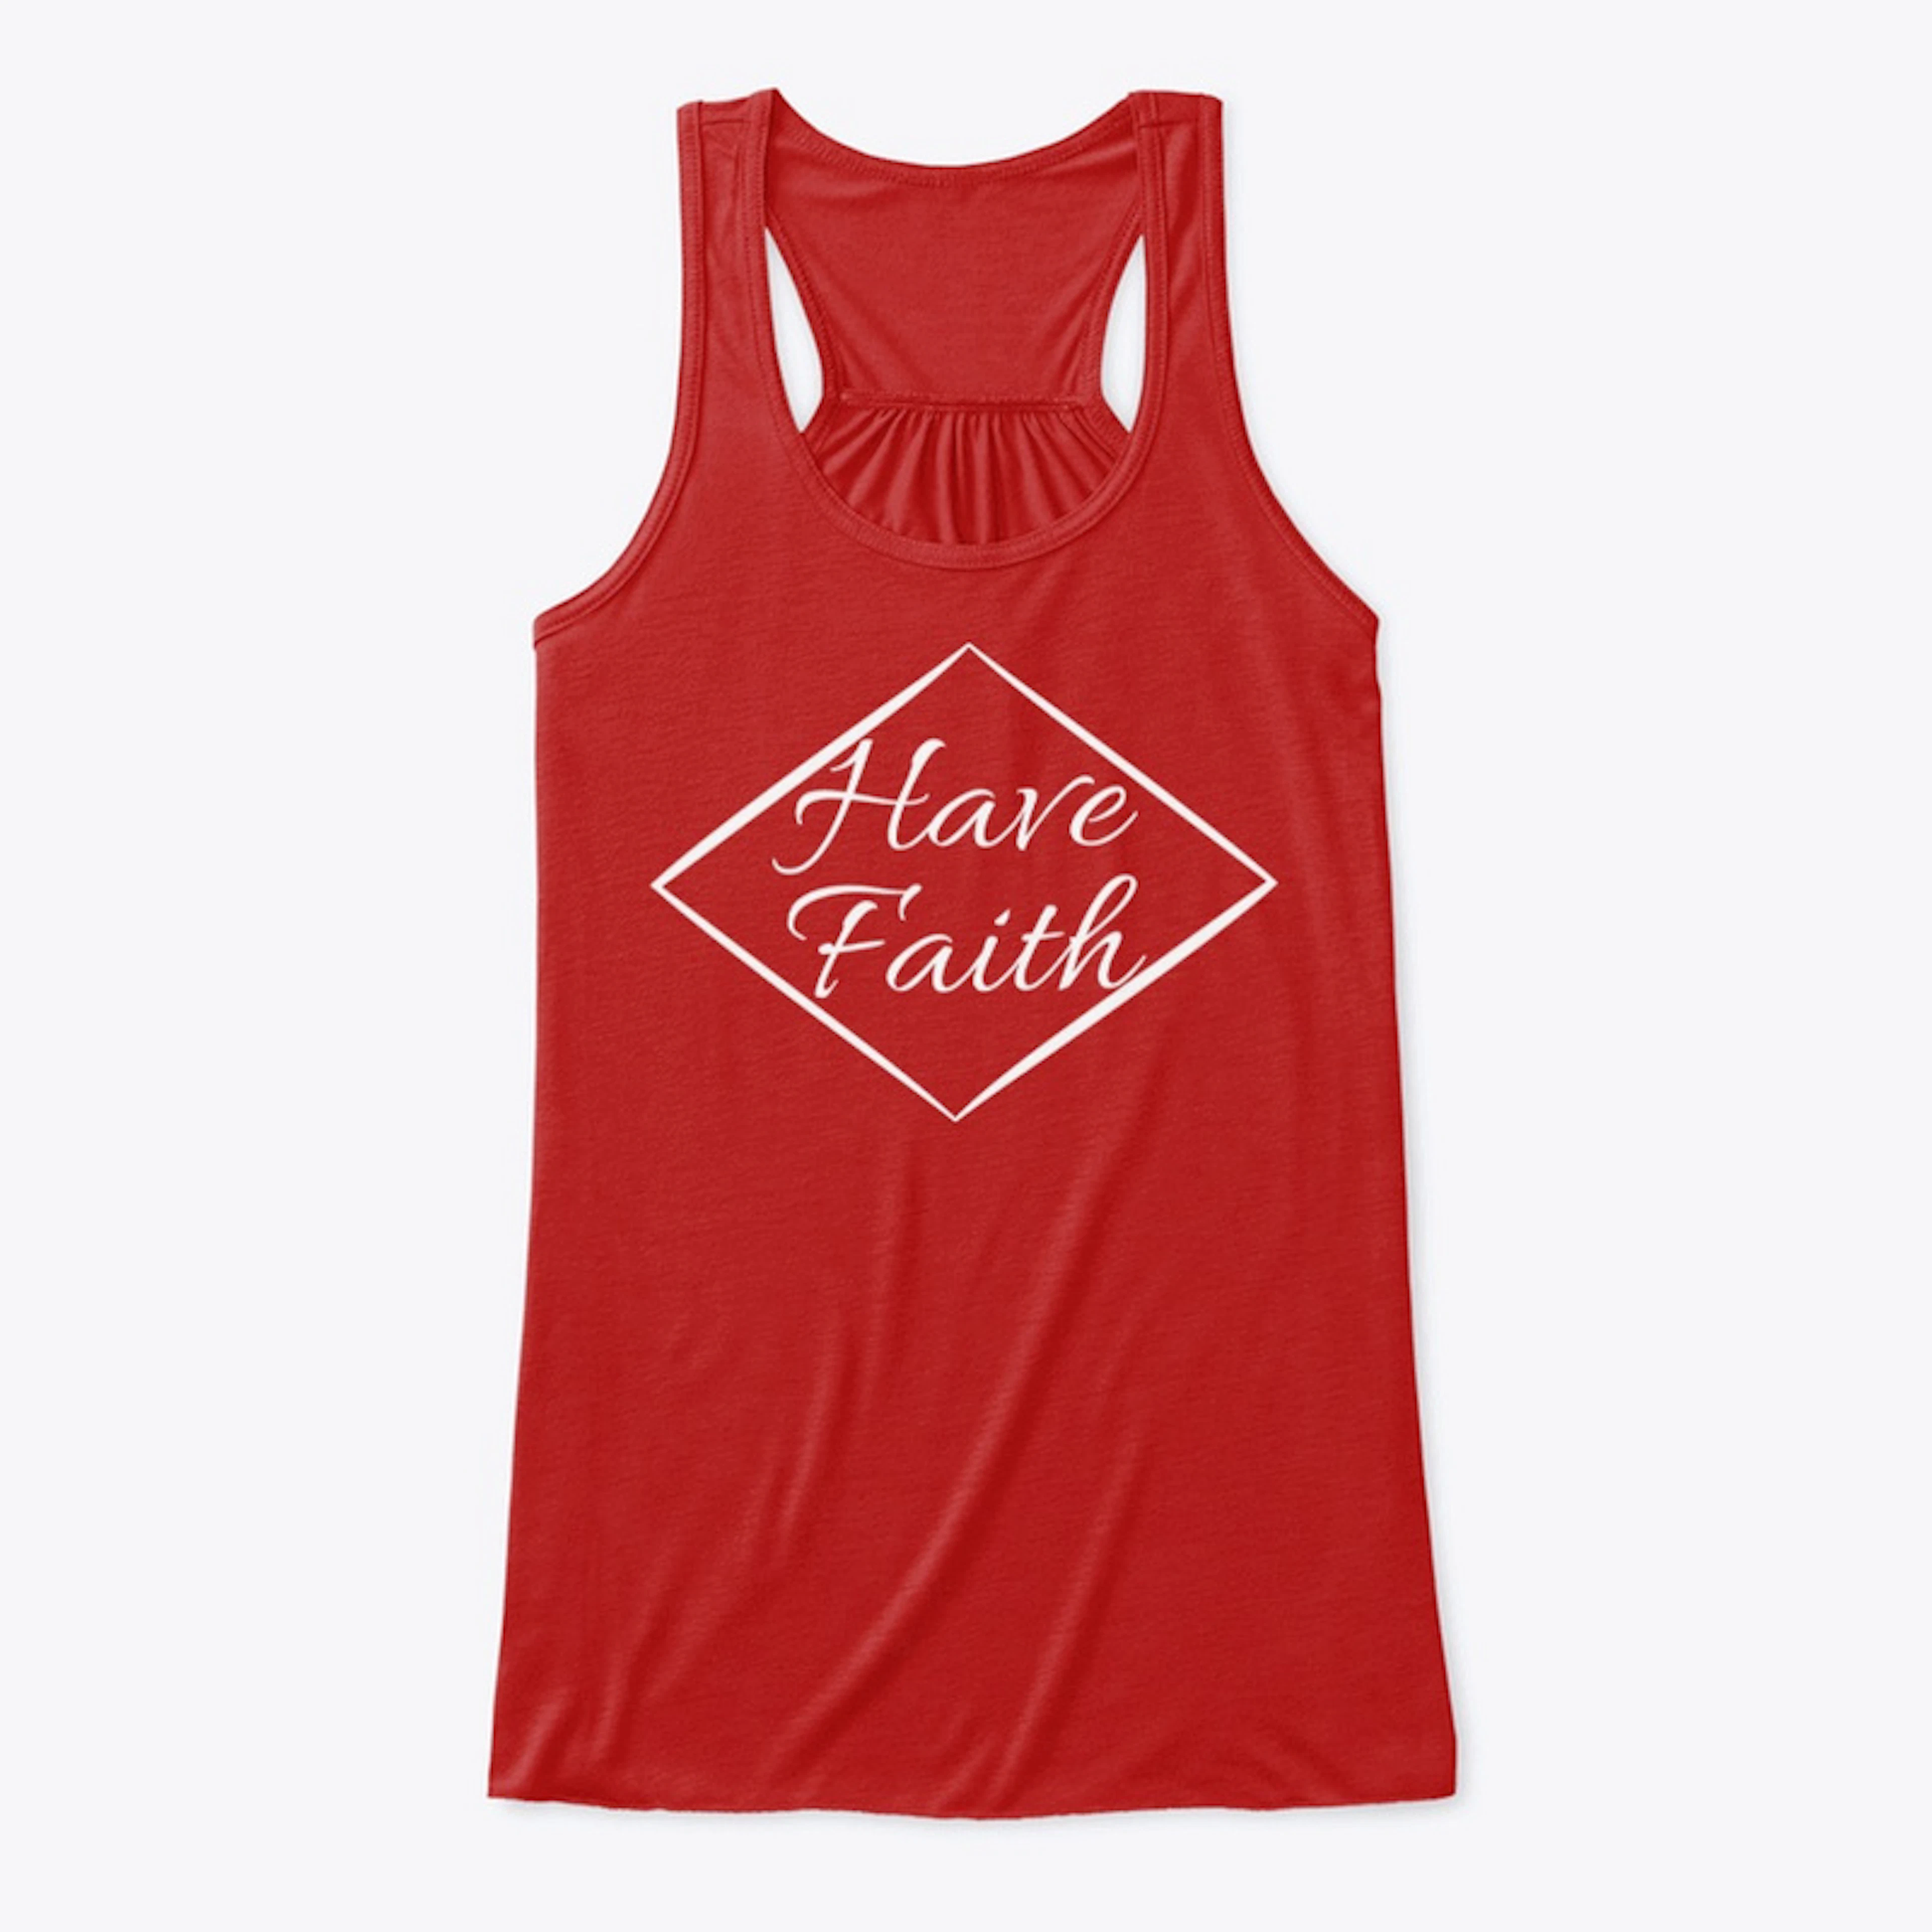 Have Faith Shirt